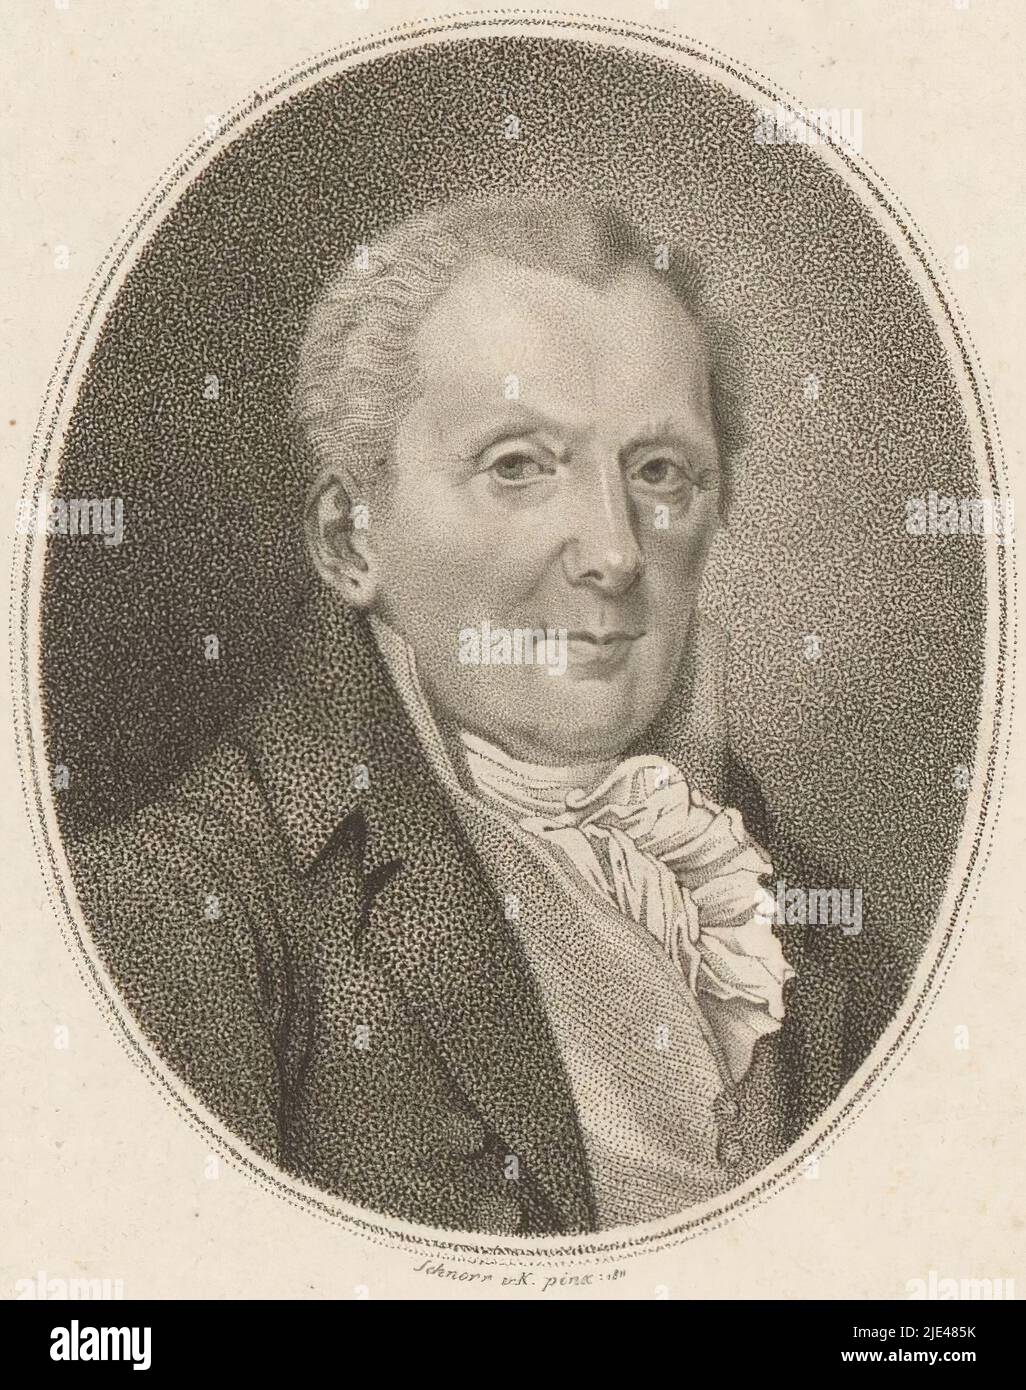 Retrato de Moritz August von Thümmel, Schnorr von Carolsfeld, 1811, imprenta: Schnorr von Carolsfeld, después: Schnorr von Carolsfeld, (mencionado sobre el objeto), 1811, papel, h 132 mm - w 106 mm Foto de stock